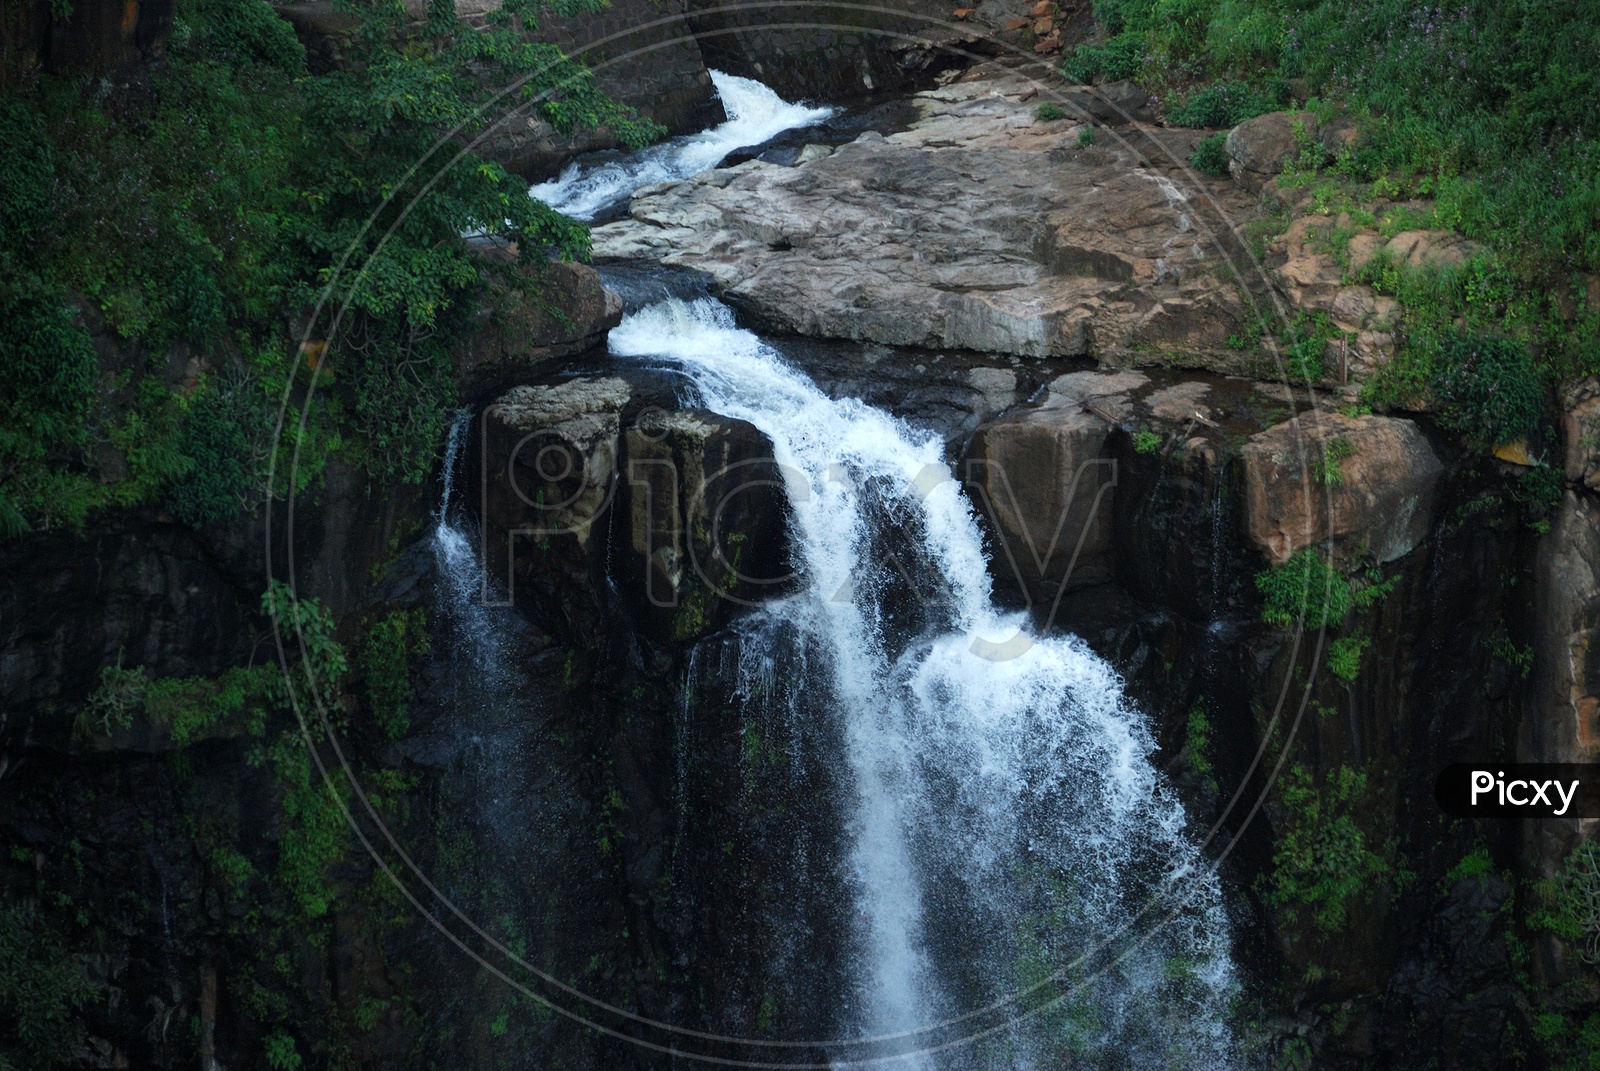 Waterfall at Chikhaldara, Maharashtra